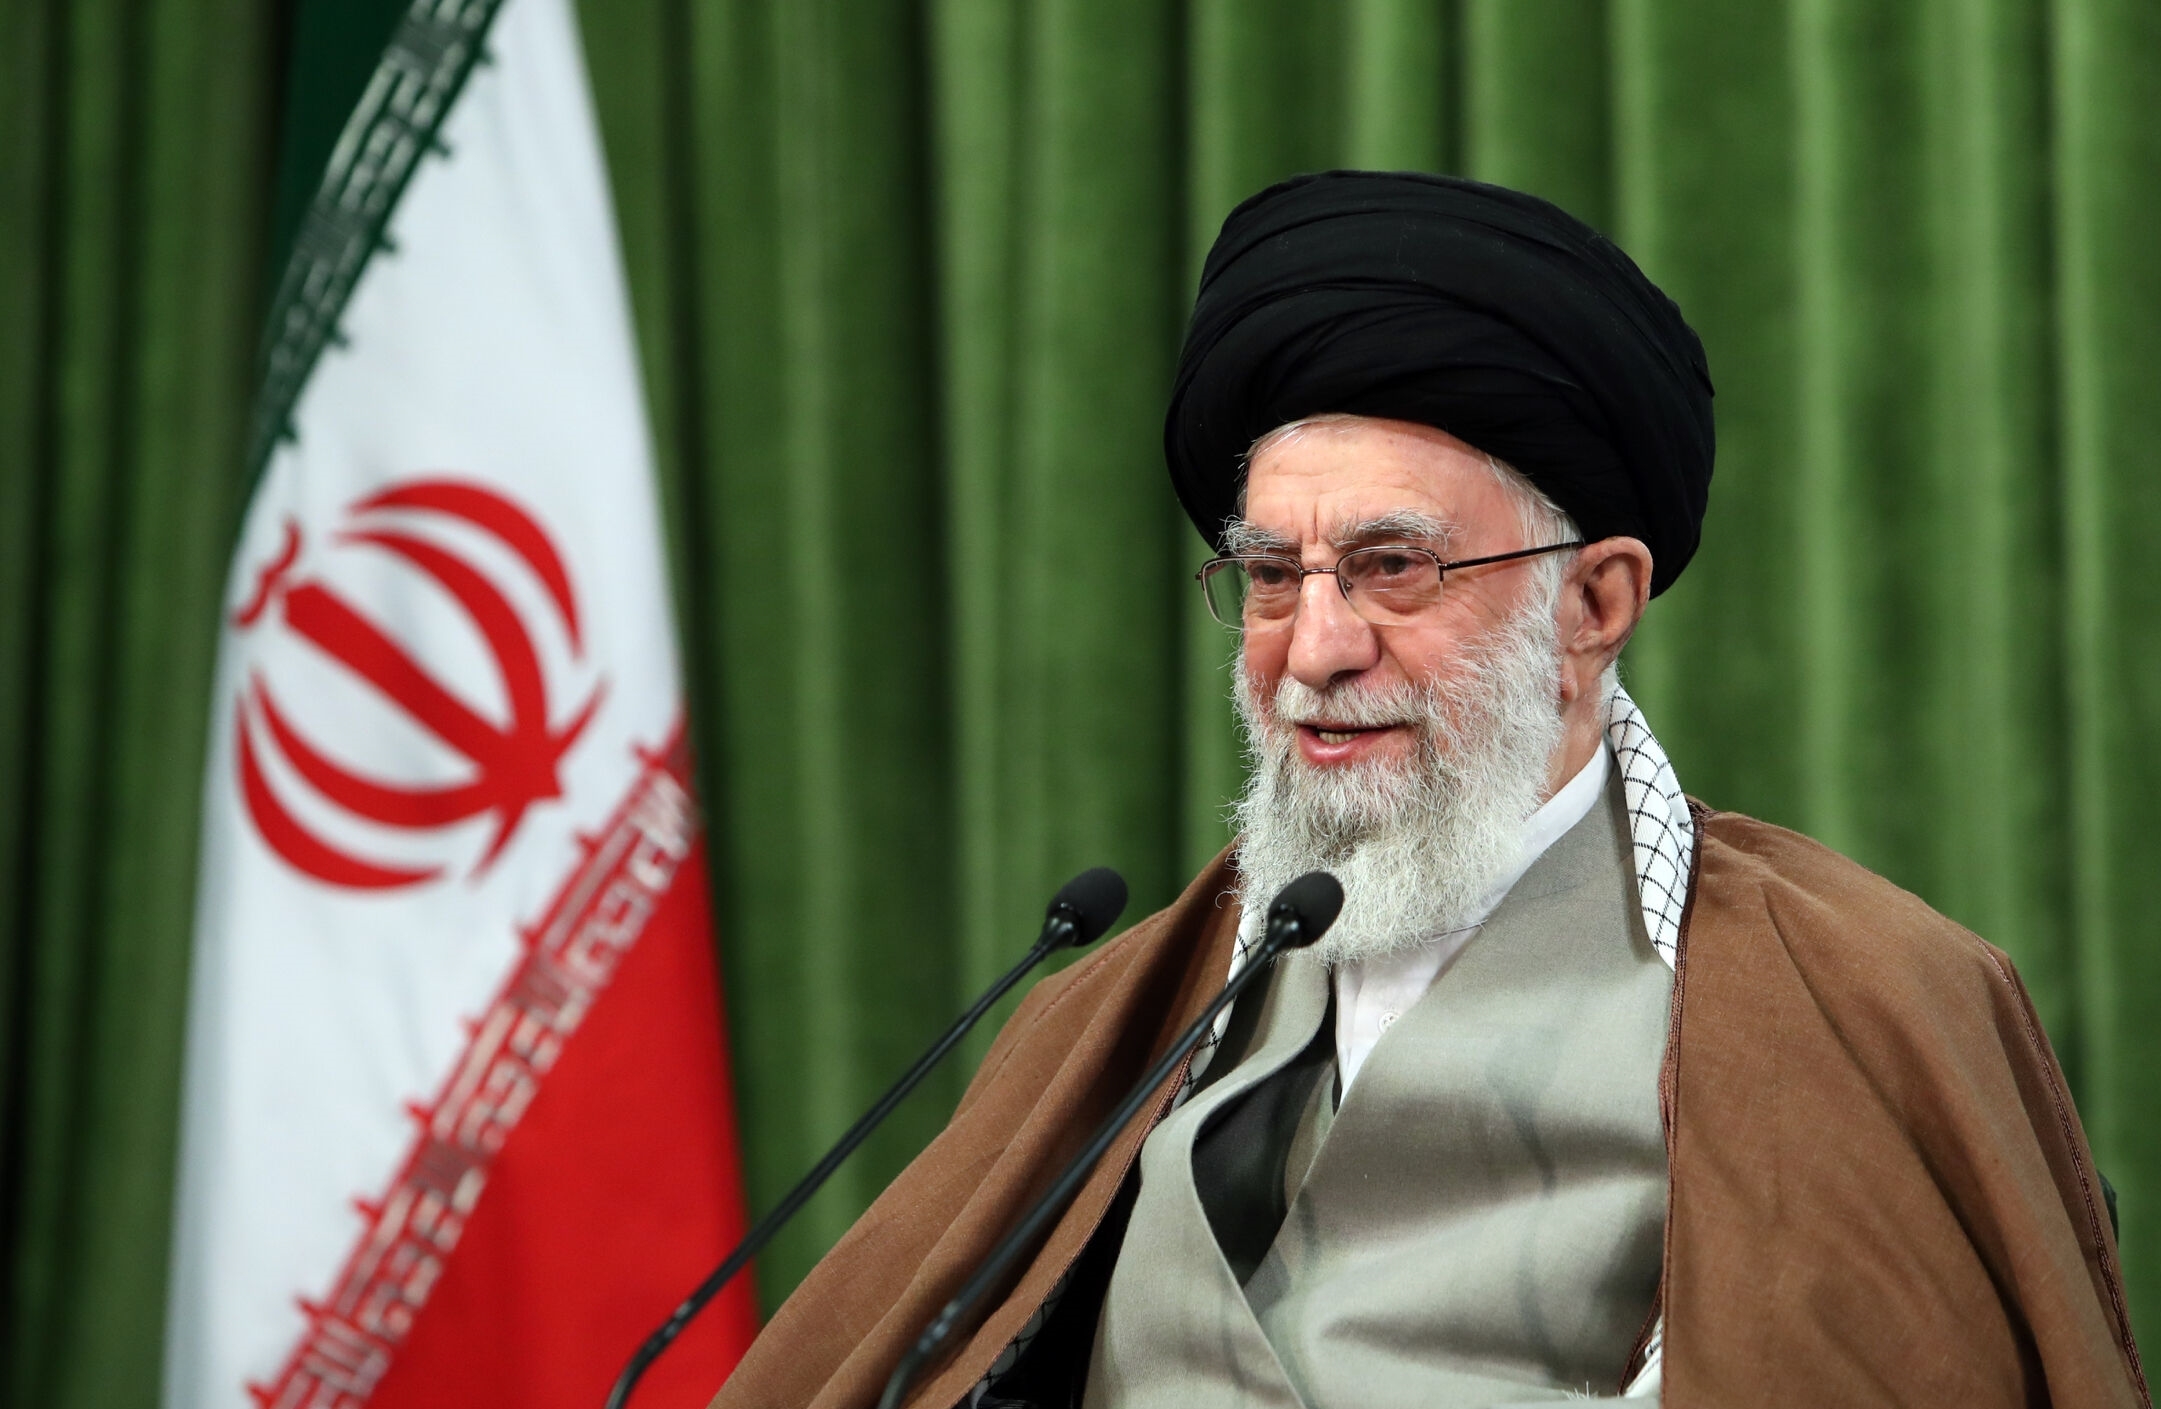 الصورة أعلاه: المرشد الأعلى الإيراني آية الله علي خامنئي يتحدث خلال خطاب متلفز في طهران، إيران في ٢١ مارس ٢٠٢١